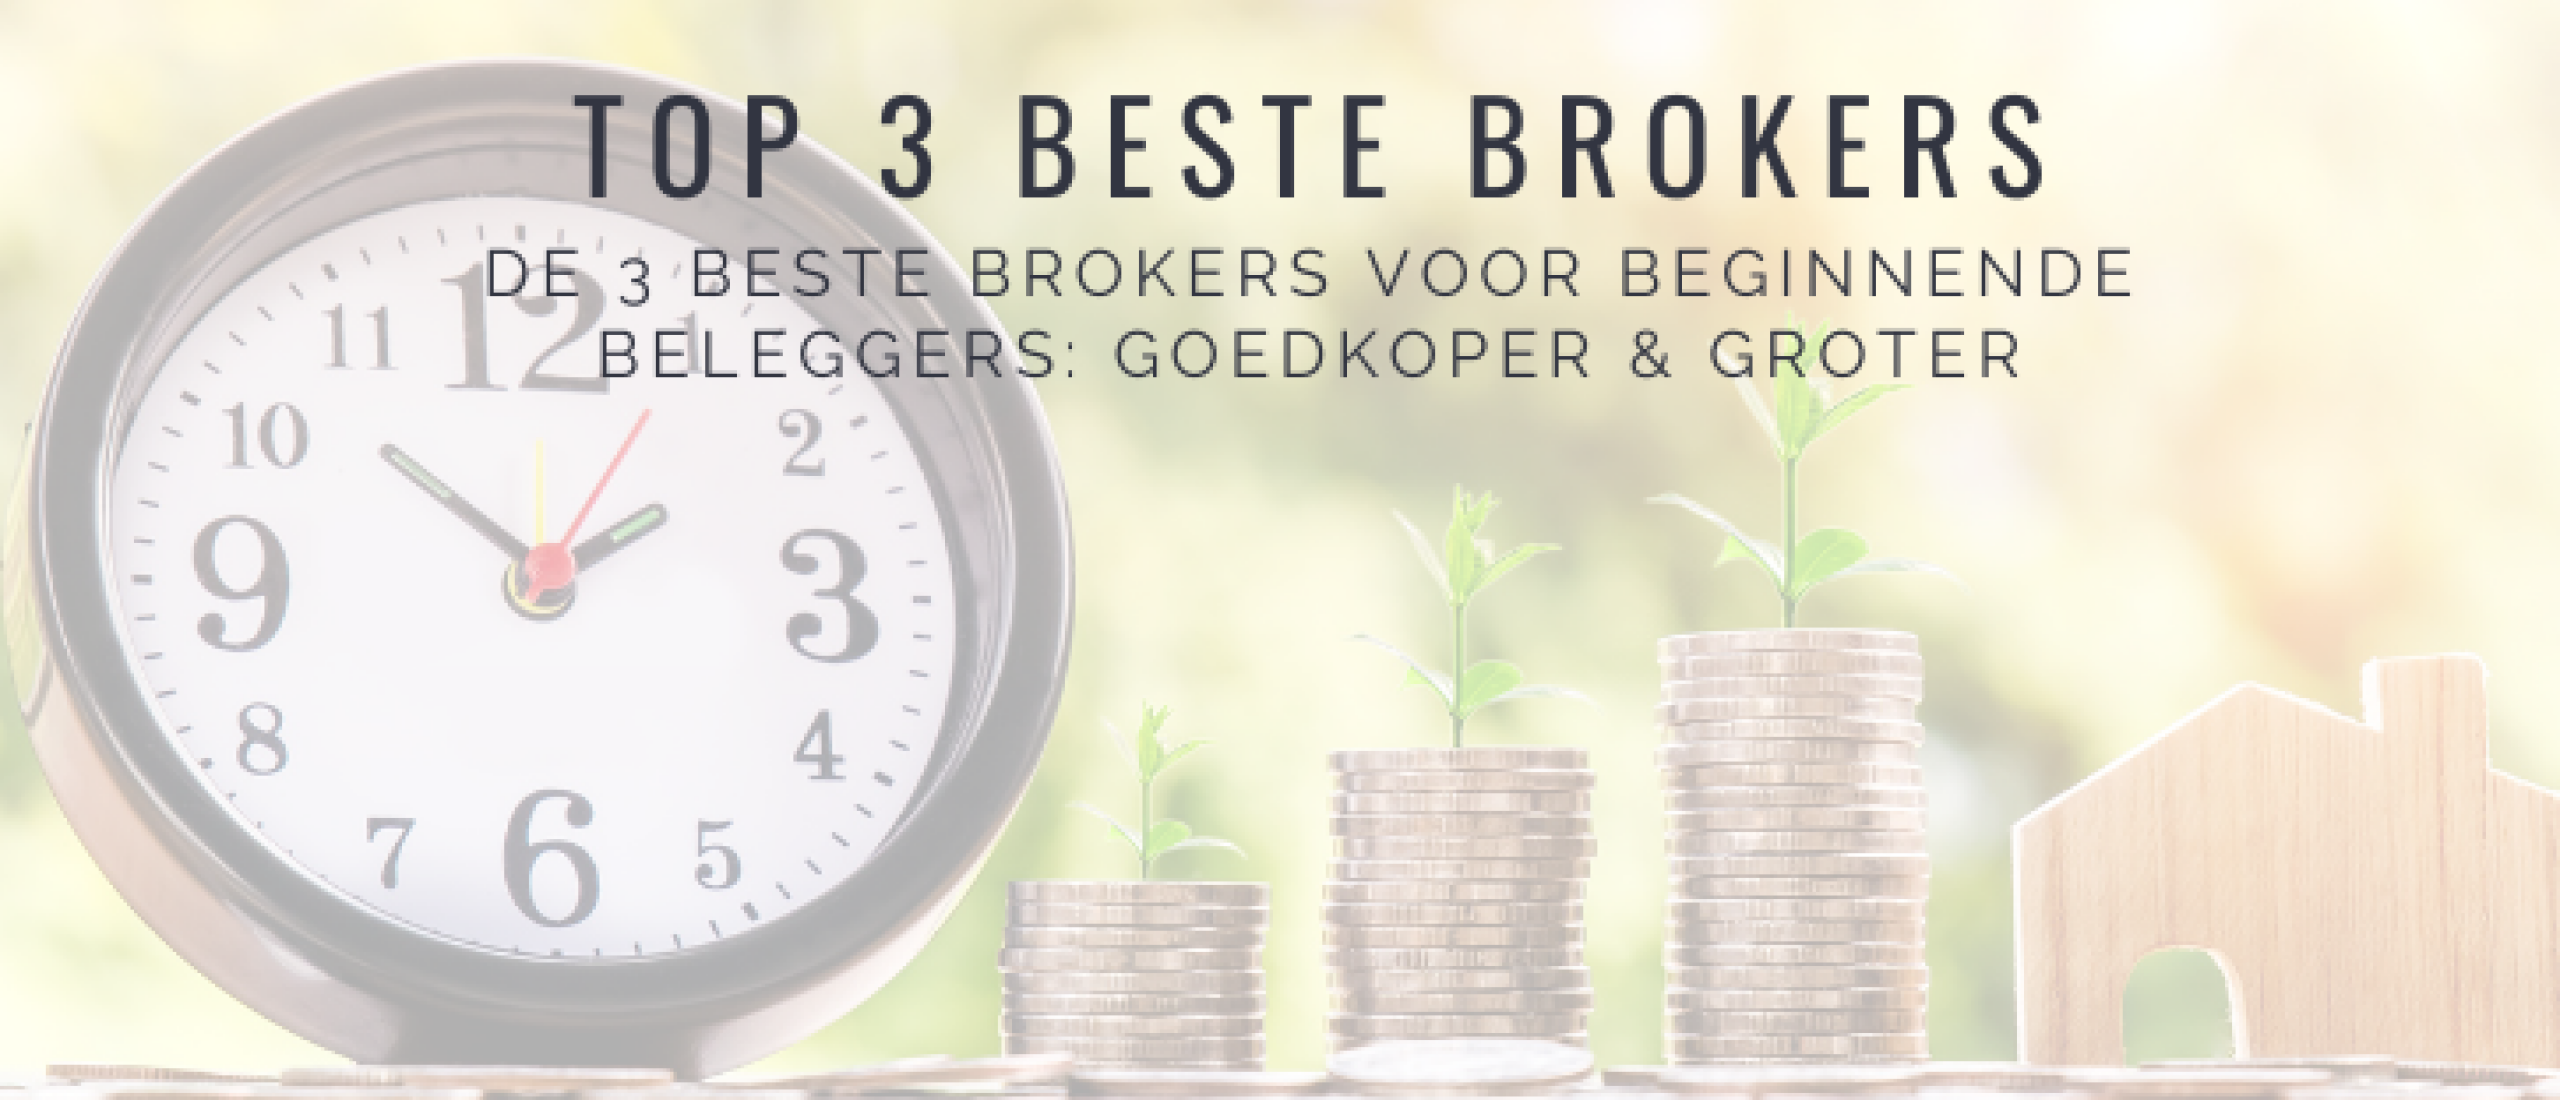 TOP 3 Beste Broker Beginnen met Beleggen | Happy Investors